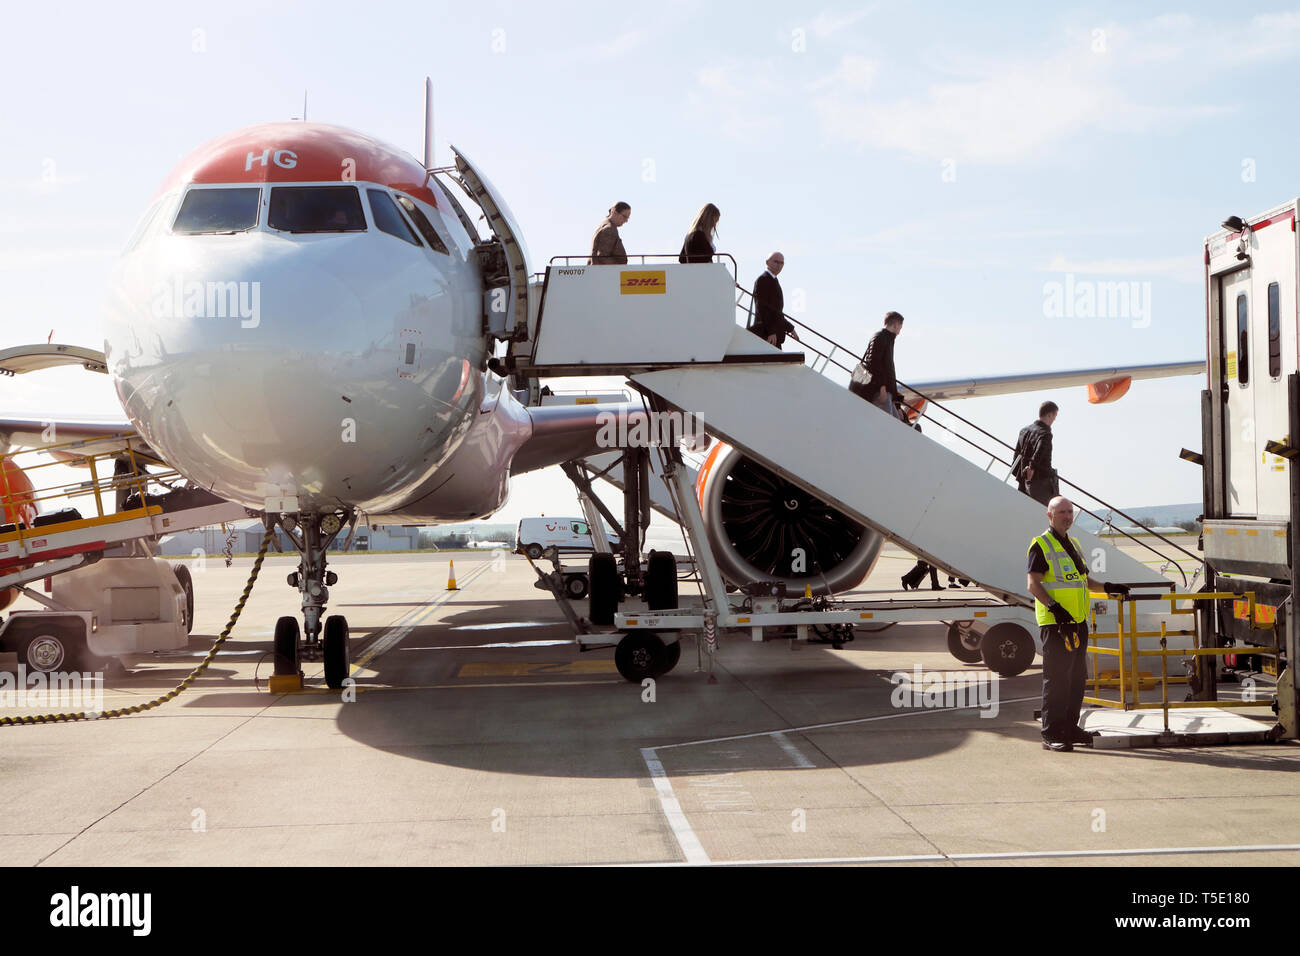 Vue de face des passagers quittant un avion Easy Jet sur le tarmac à l'aéroport de Bristol Angleterre Grande-Bretagne KATHY DEWITT Banque D'Images